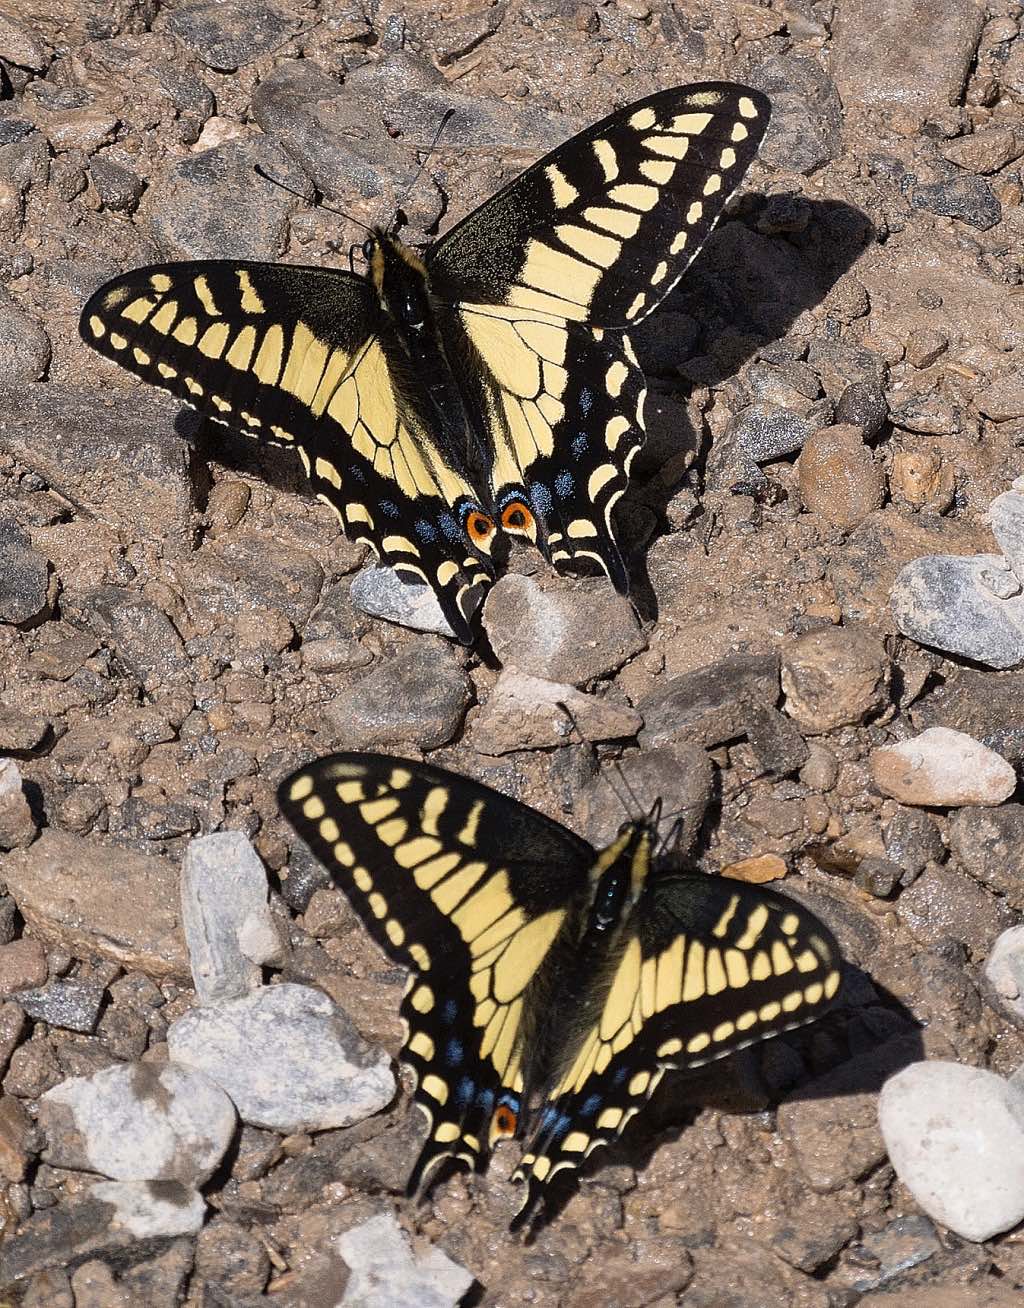 Anise Swallowtail Butterflies resting on rocks